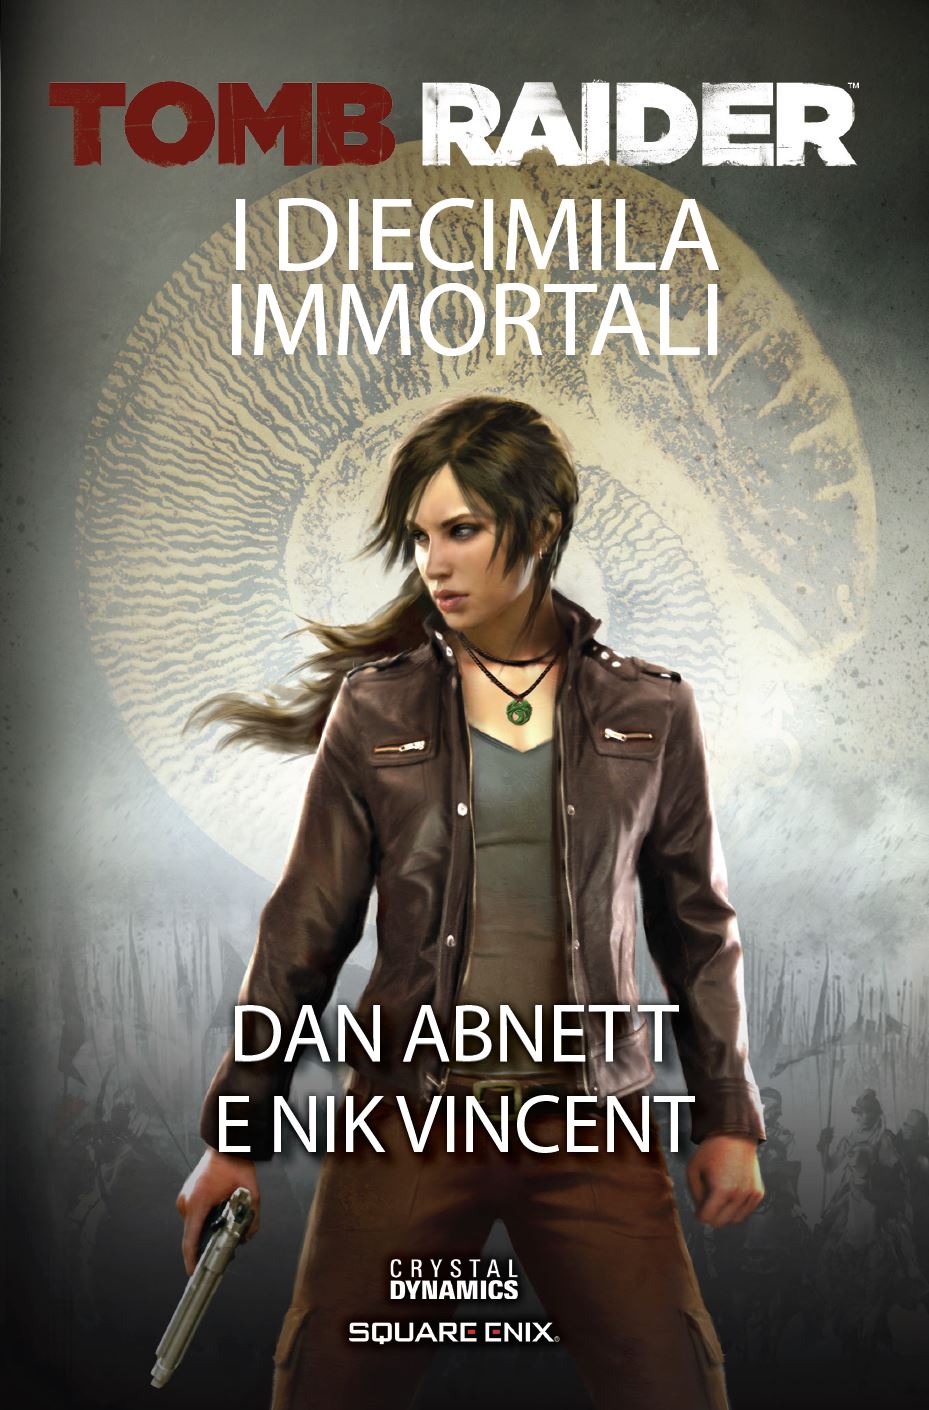 Tomb Raider I Diecimila Immortali